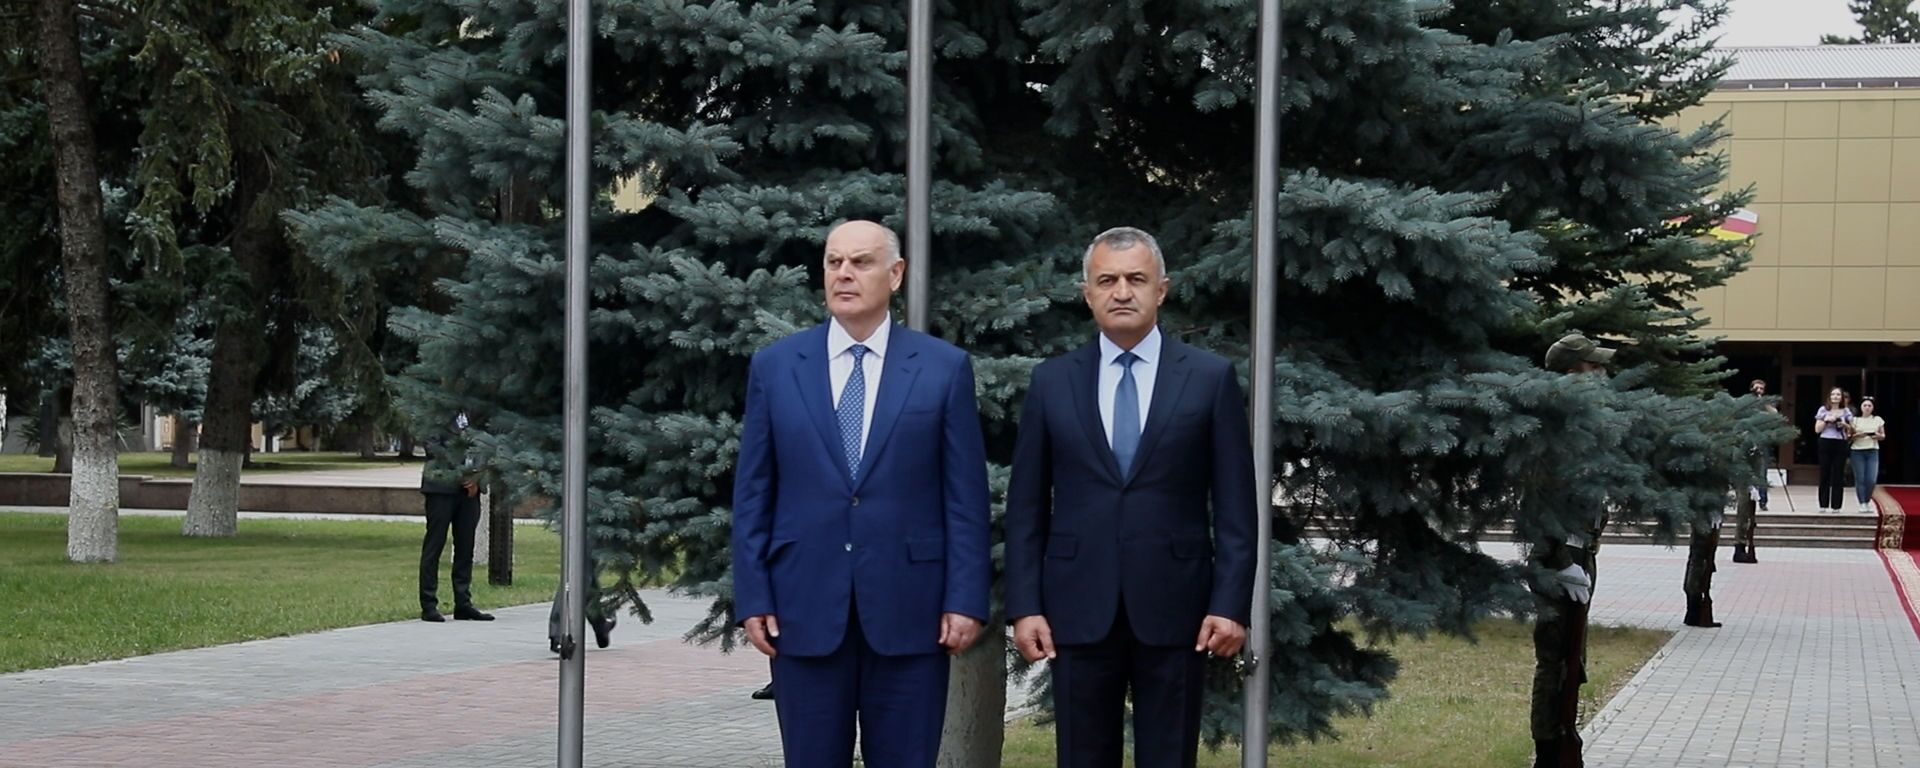 Почетный караул и переговоры: визит президента Абхазии в Южную Осетию - видео - Sputnik Южная Осетия, 1920, 07.08.2021